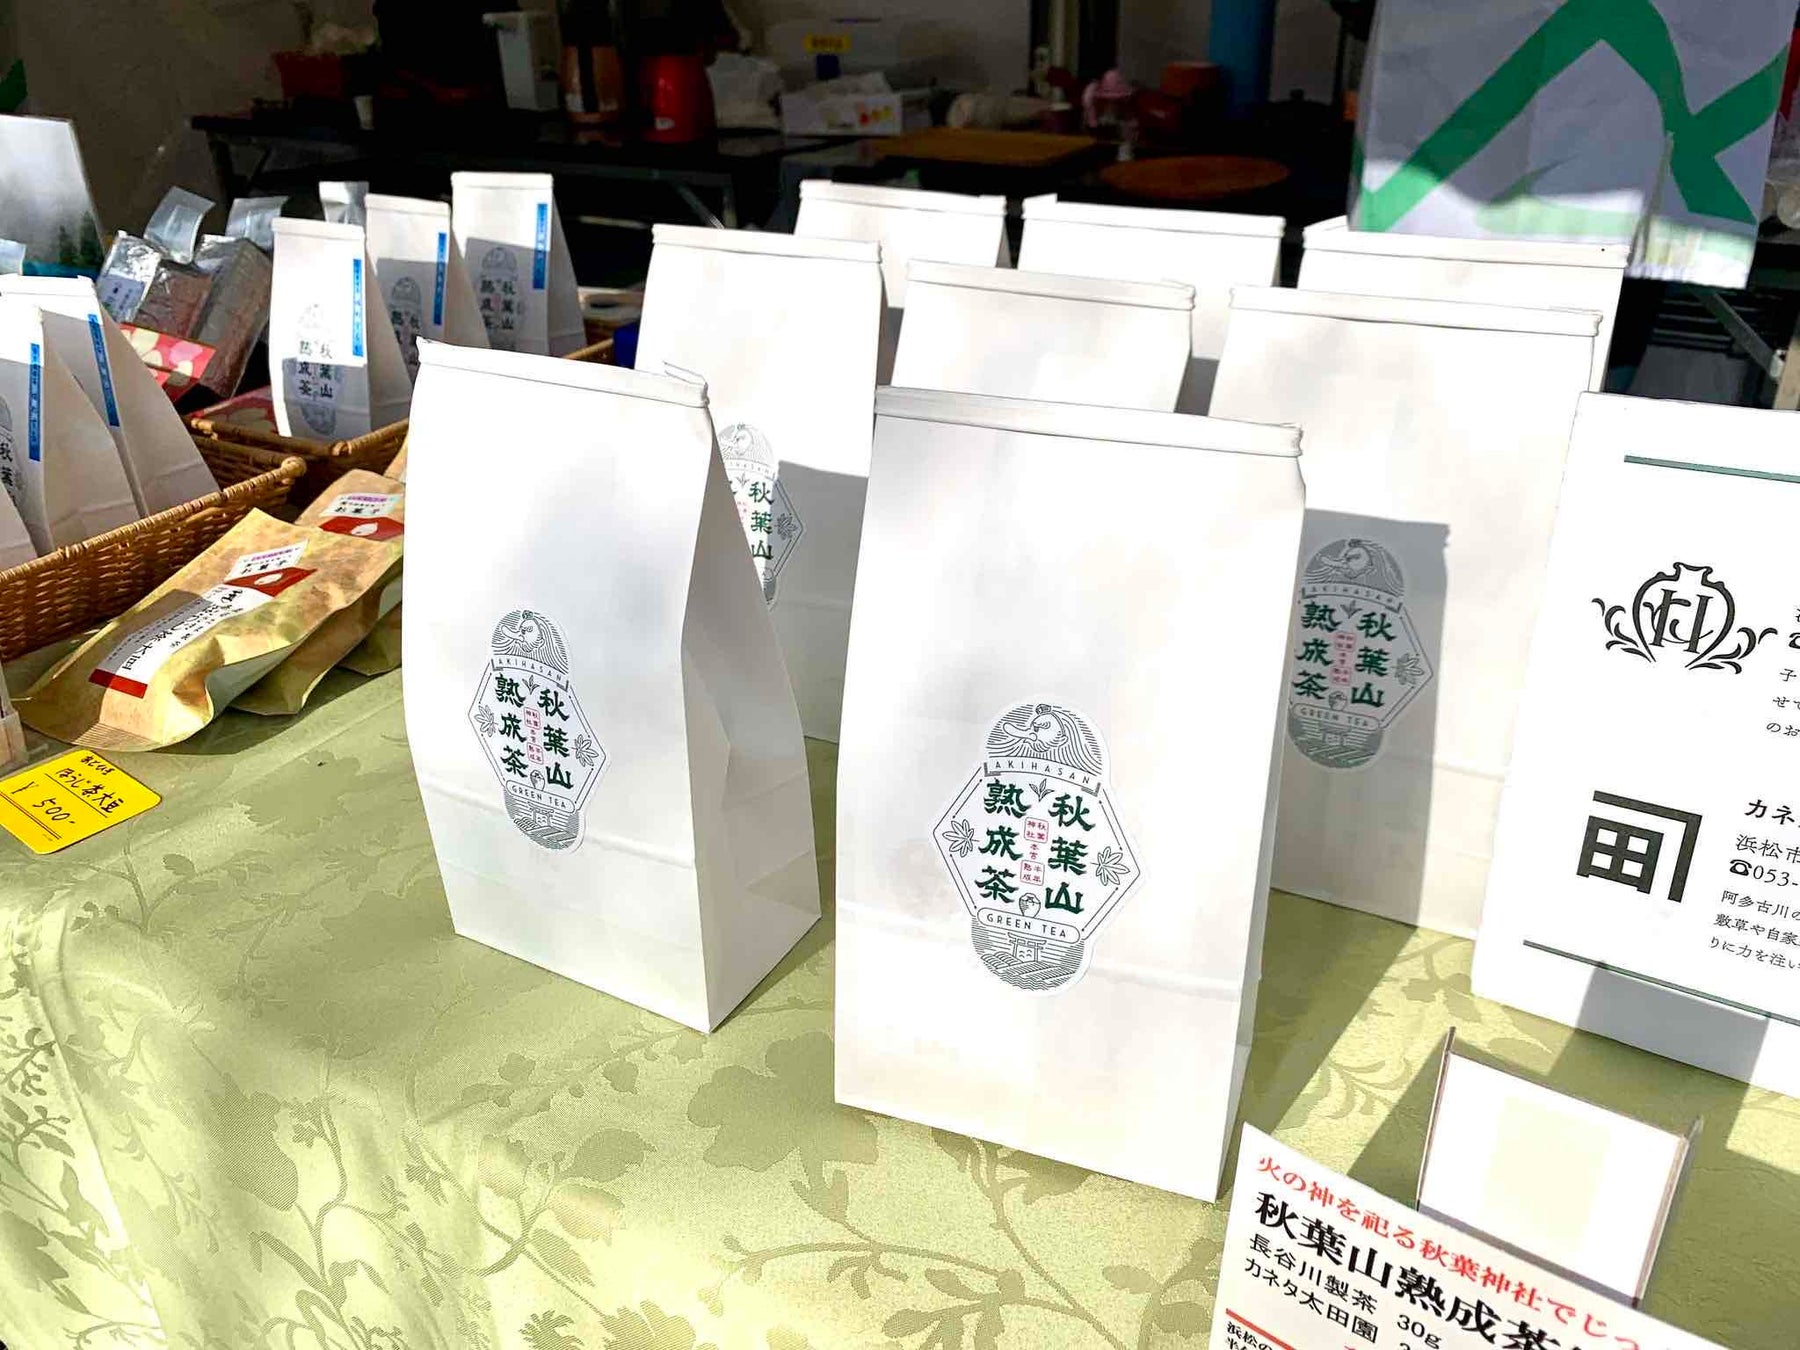 「秋葉山熟成茶のお披露目会」の開催についてのサブ画像1